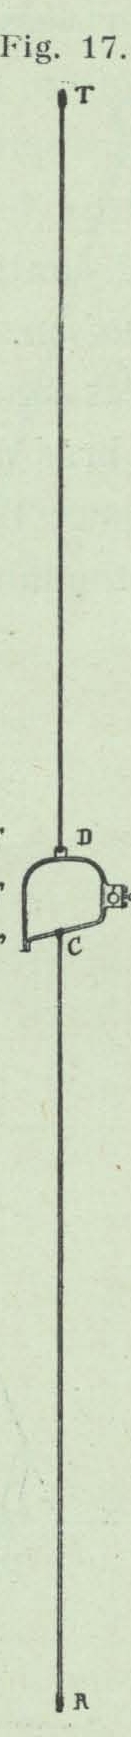 Gilson (1911, fig. 17)